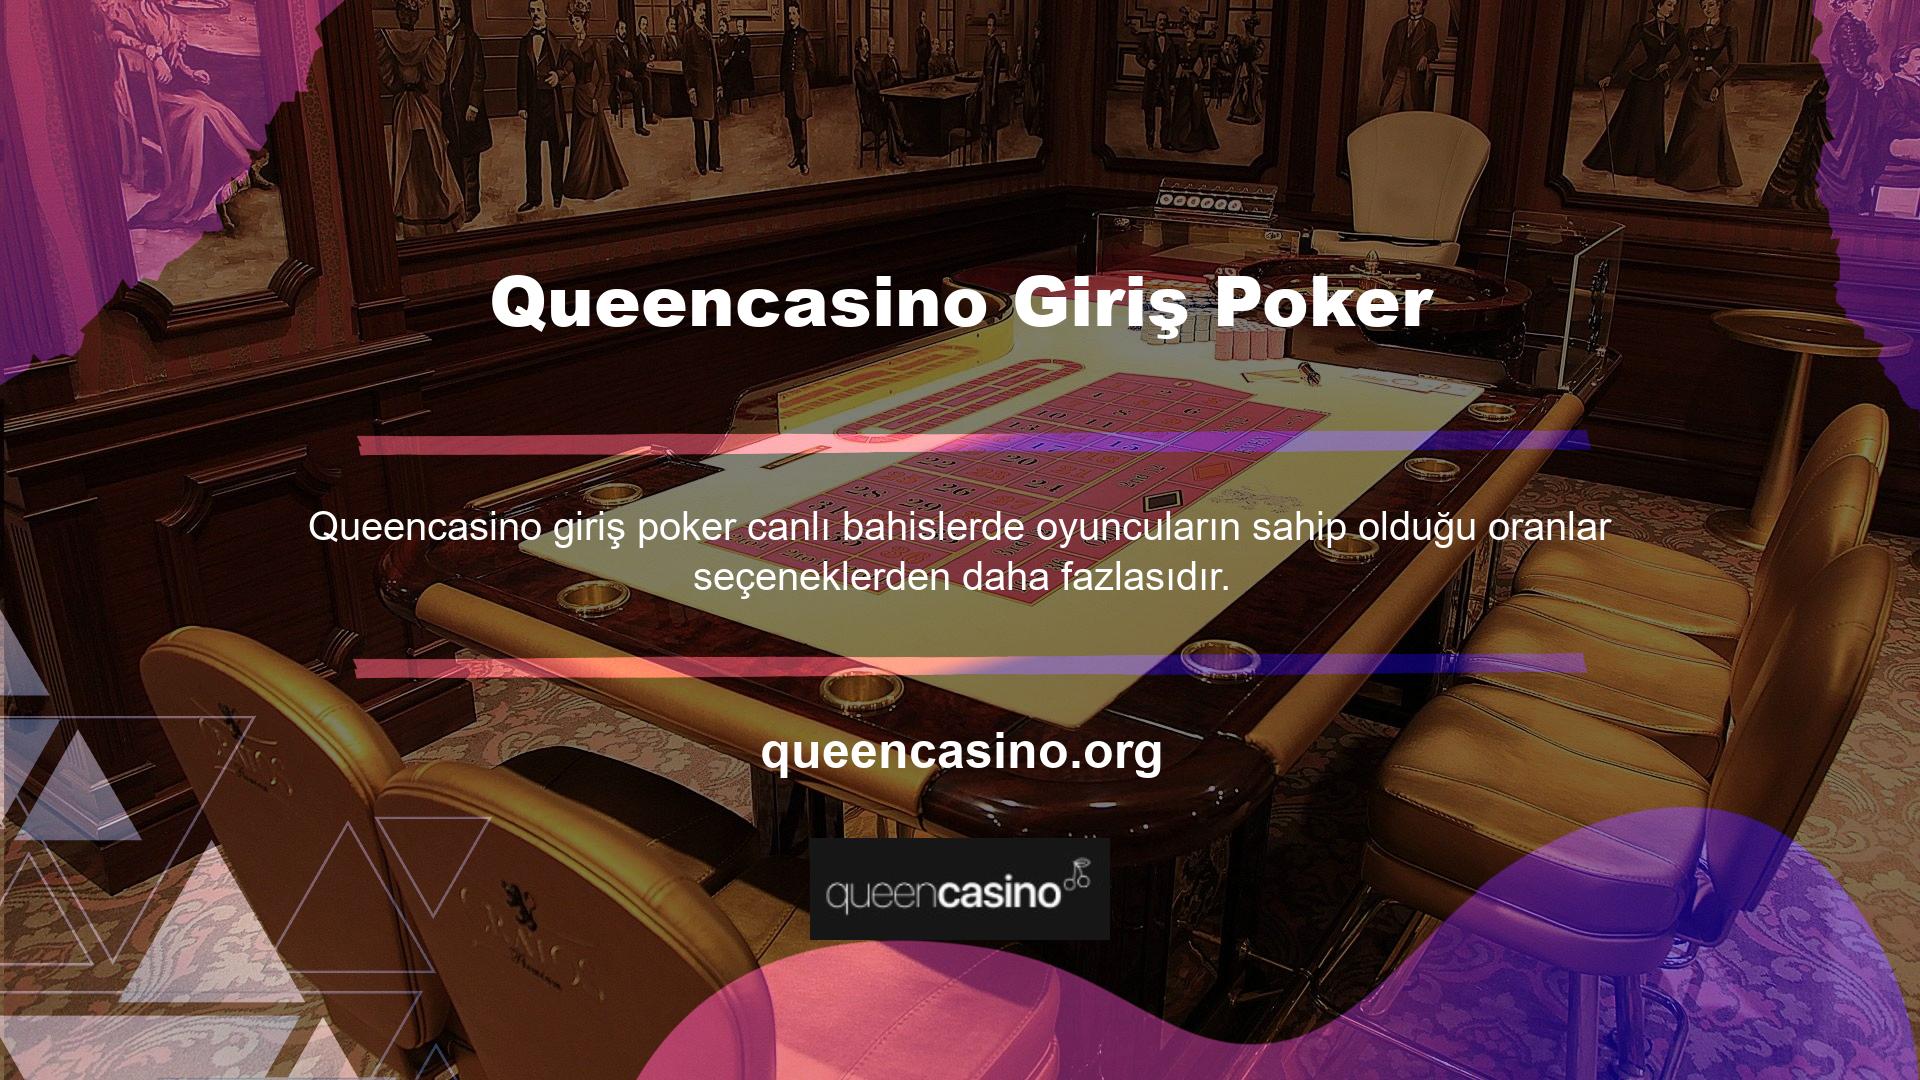 Queencasino Login Poker, casino sitesi için yeni bir adrese sahip lisanslı bir casino şirketidir